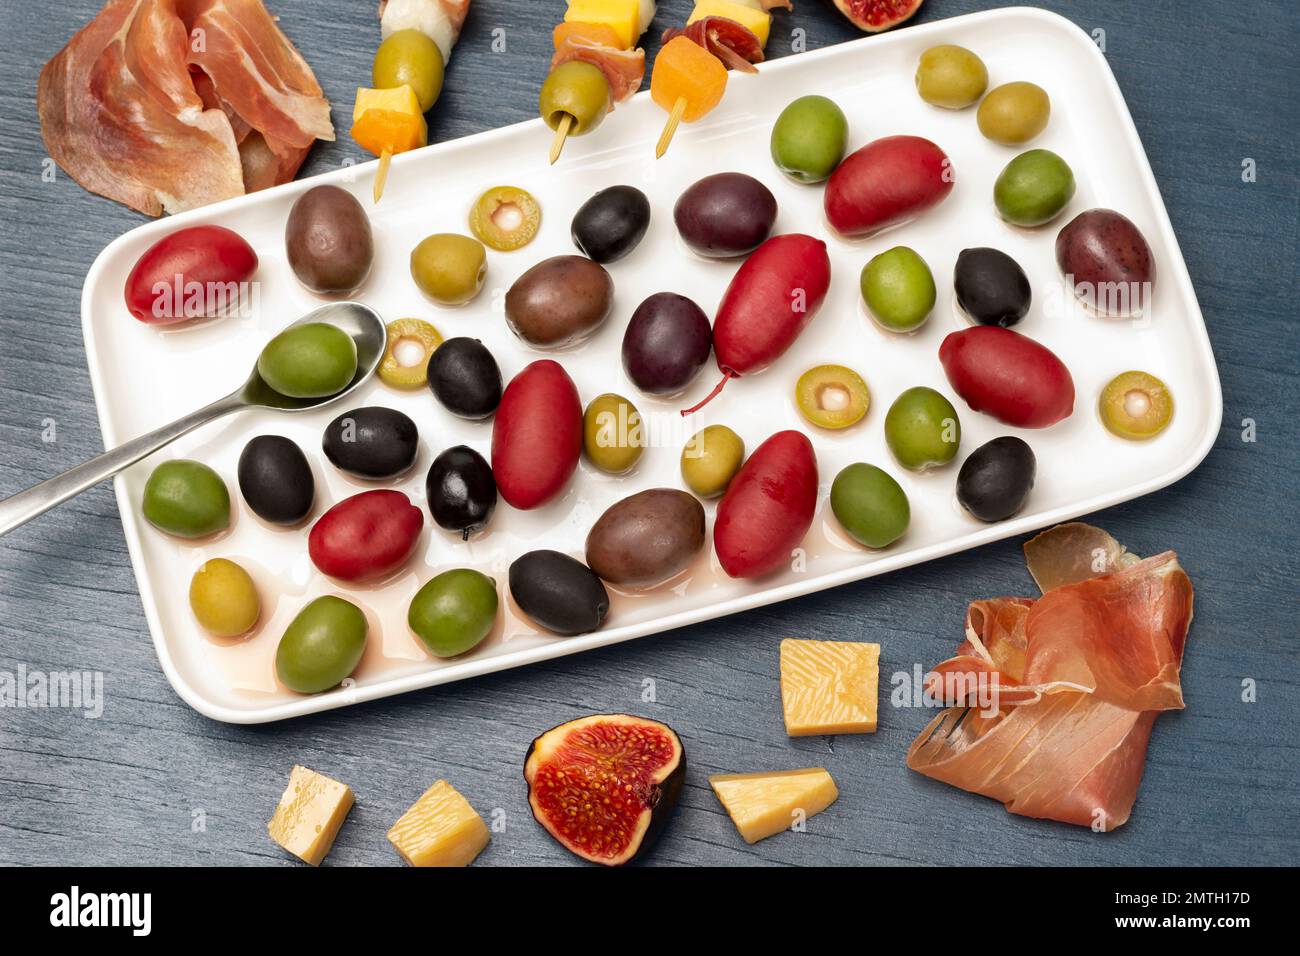 Oliven verschiedener Sorten und Farben als weiße Platte. Käse, Oliven, Jamon und Feigen auf einem Tisch. Flach verlegt. Blauer Hintergrund. Stockfoto